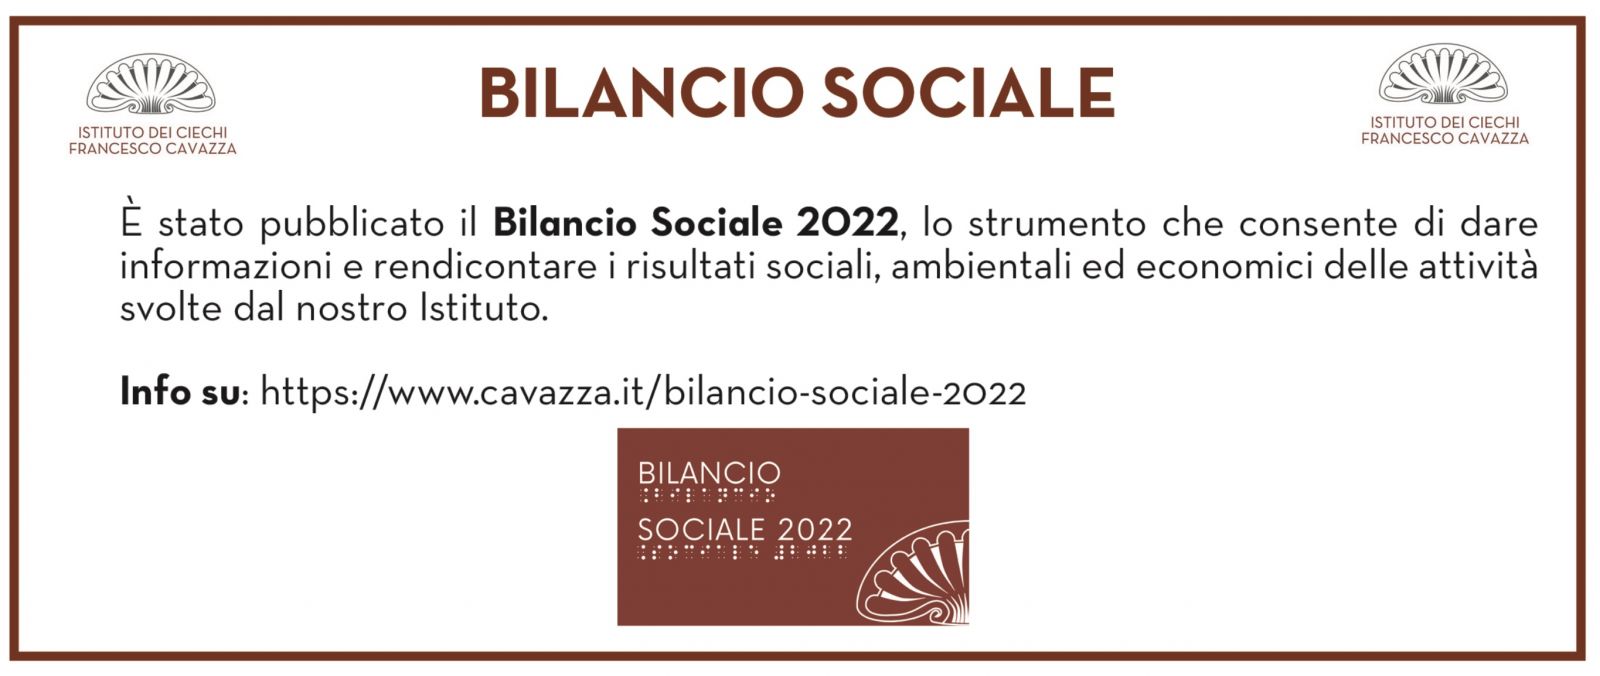 Bilancio sociale 2022